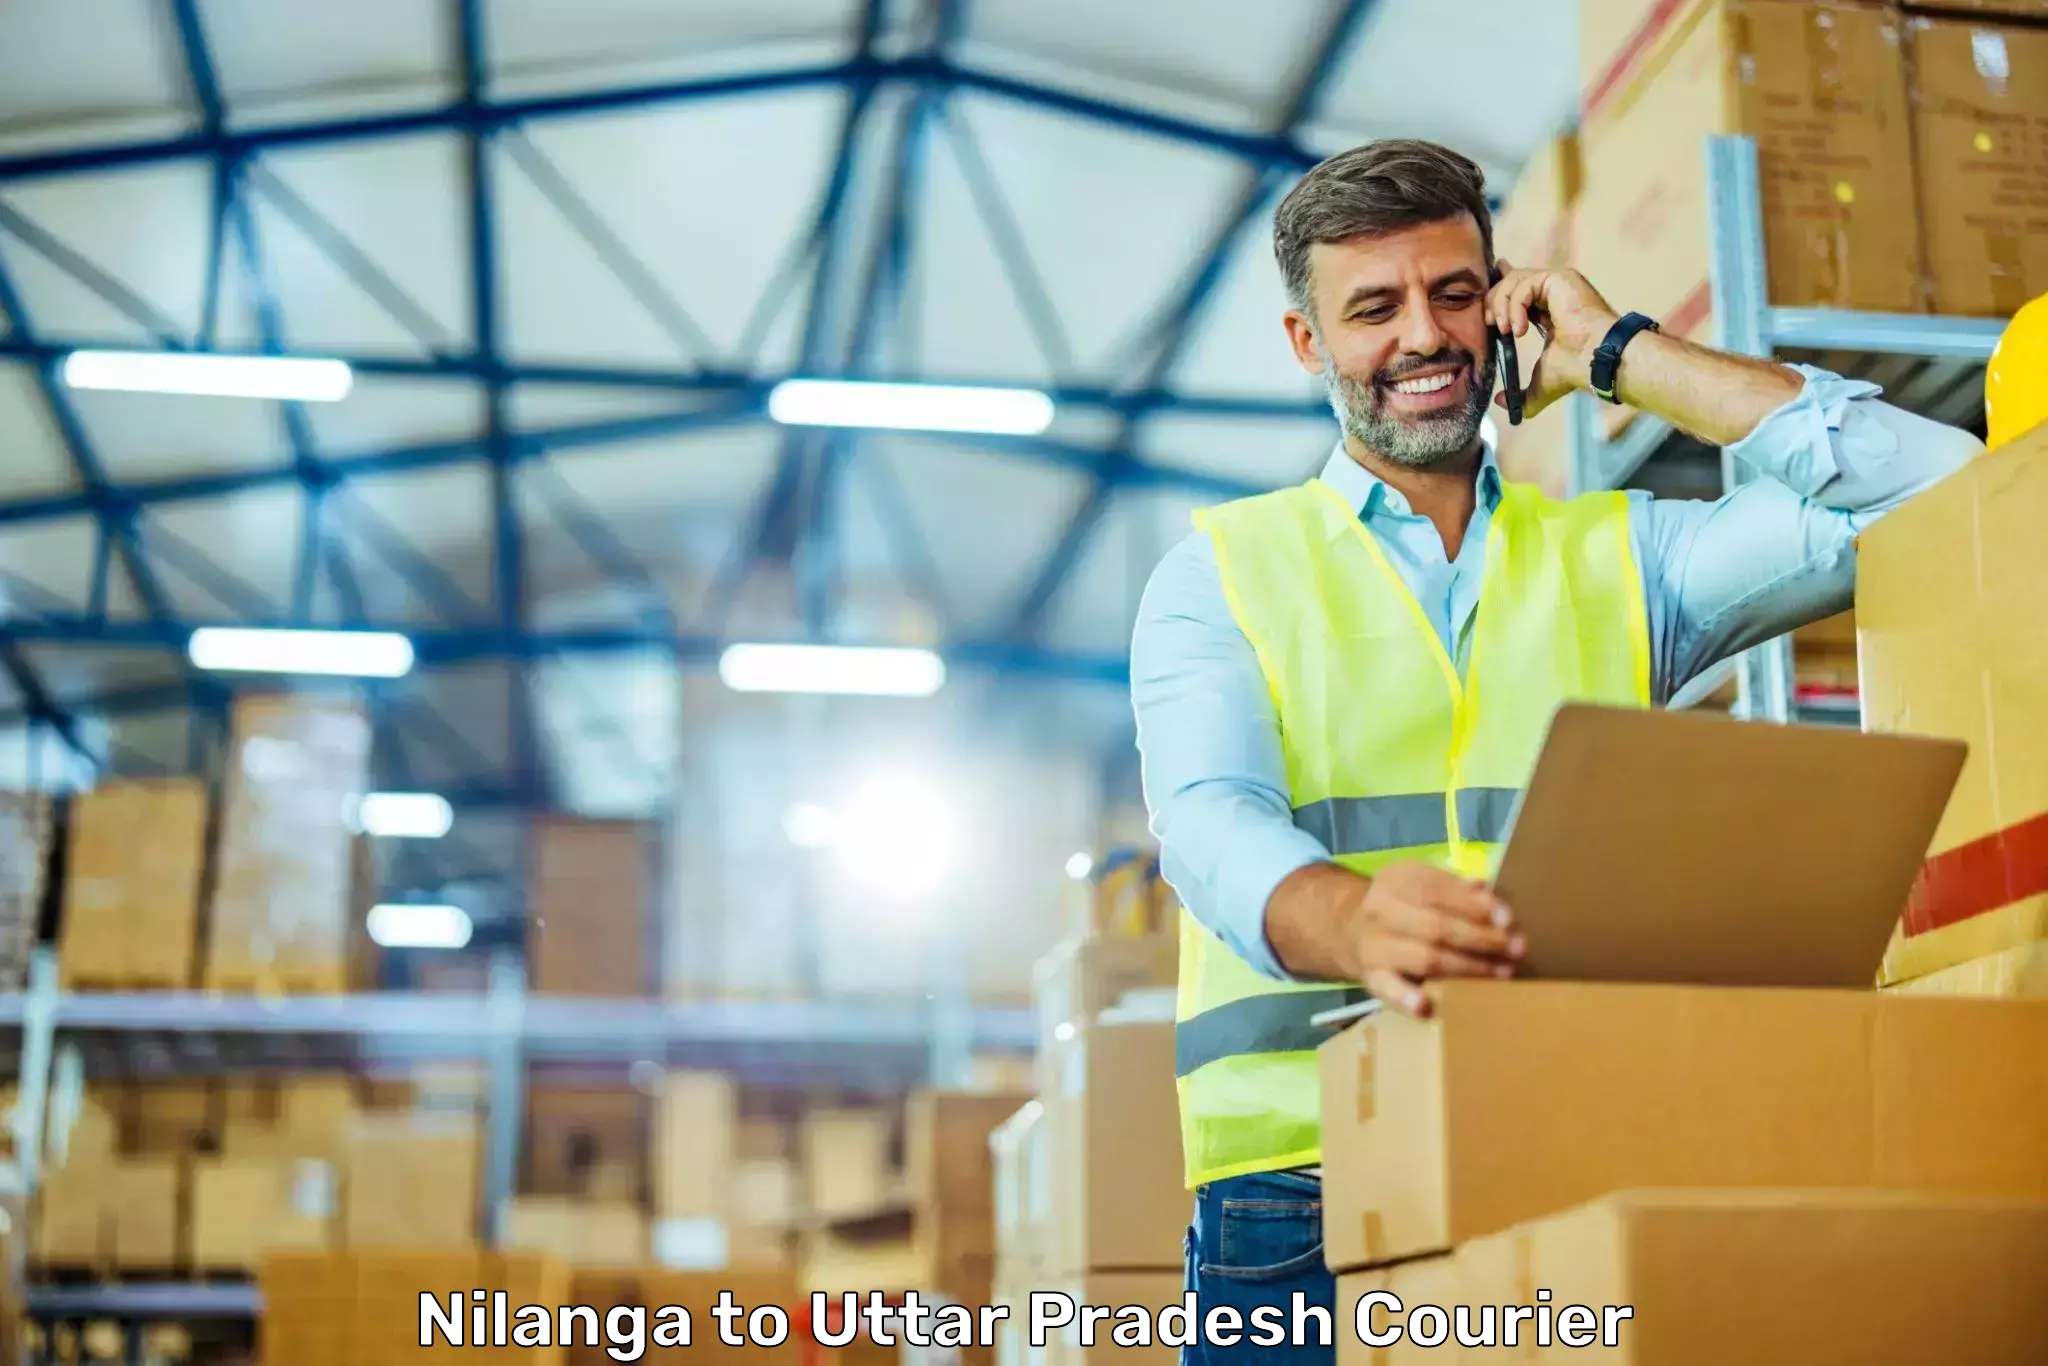 Customizable shipping options Nilanga to Shahganj